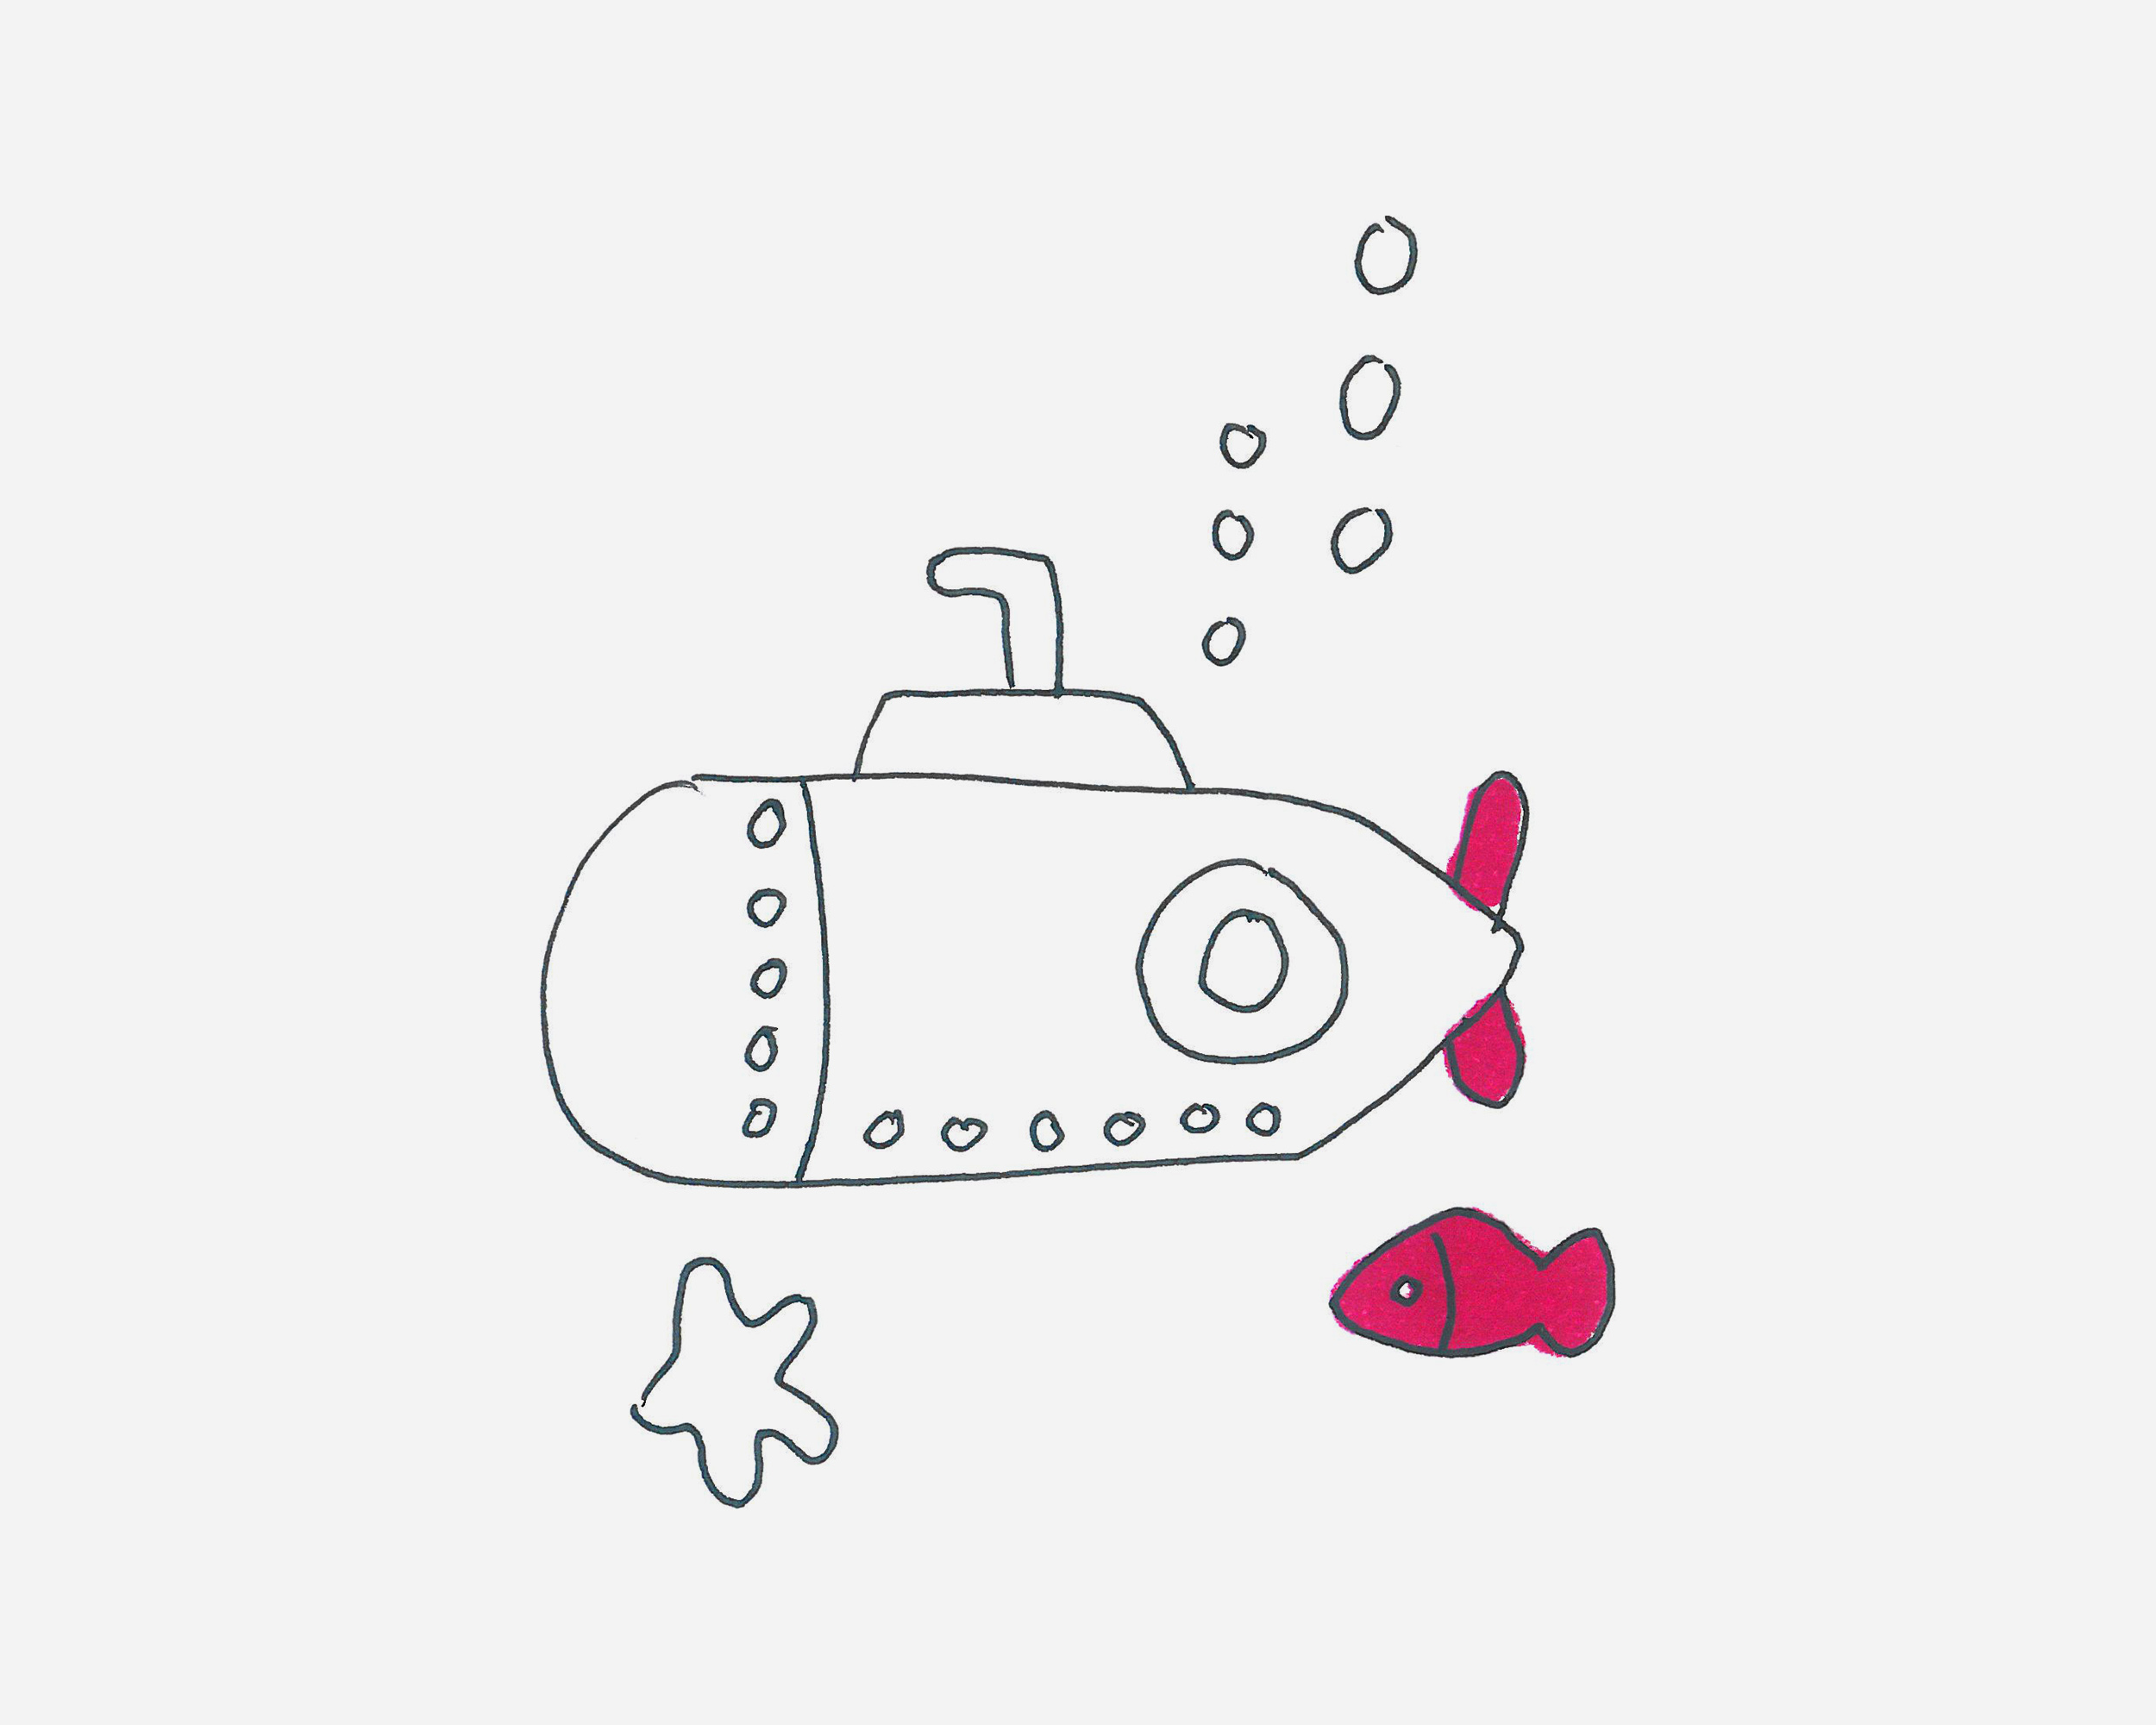 自制潜水艇 diy创意科技小制作手工 潜水沉浮实验 邢老师-阿里巴巴